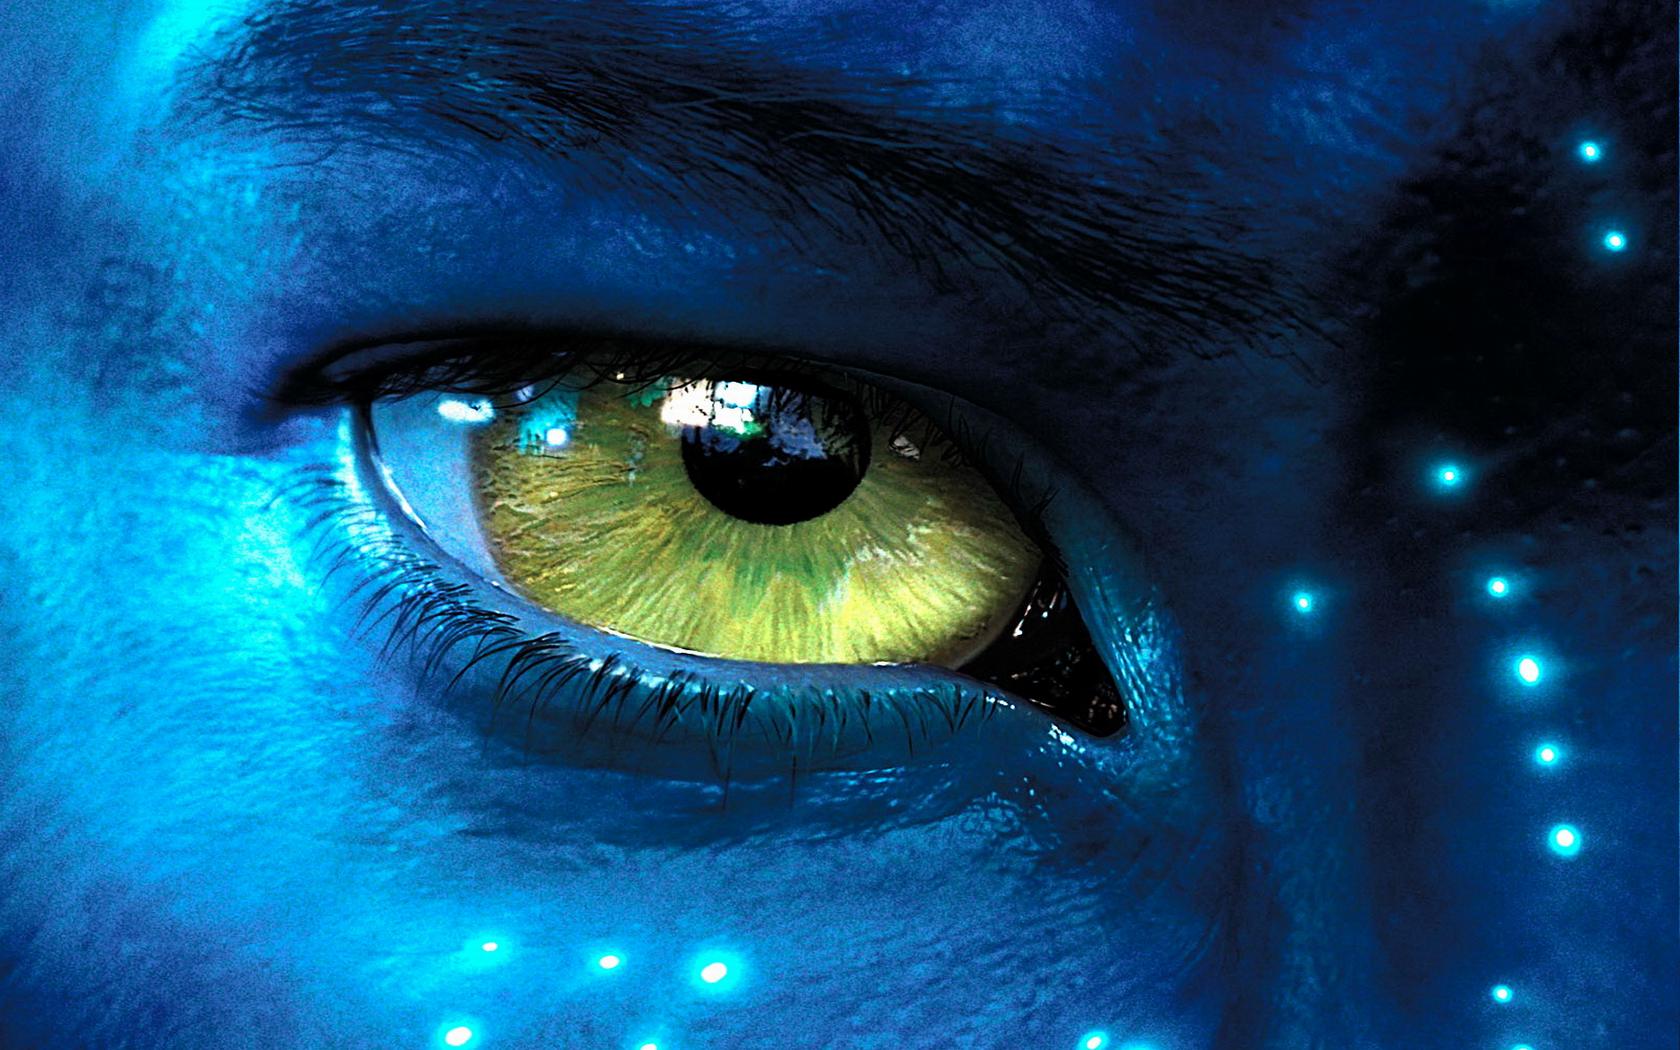 Na'vi Eye